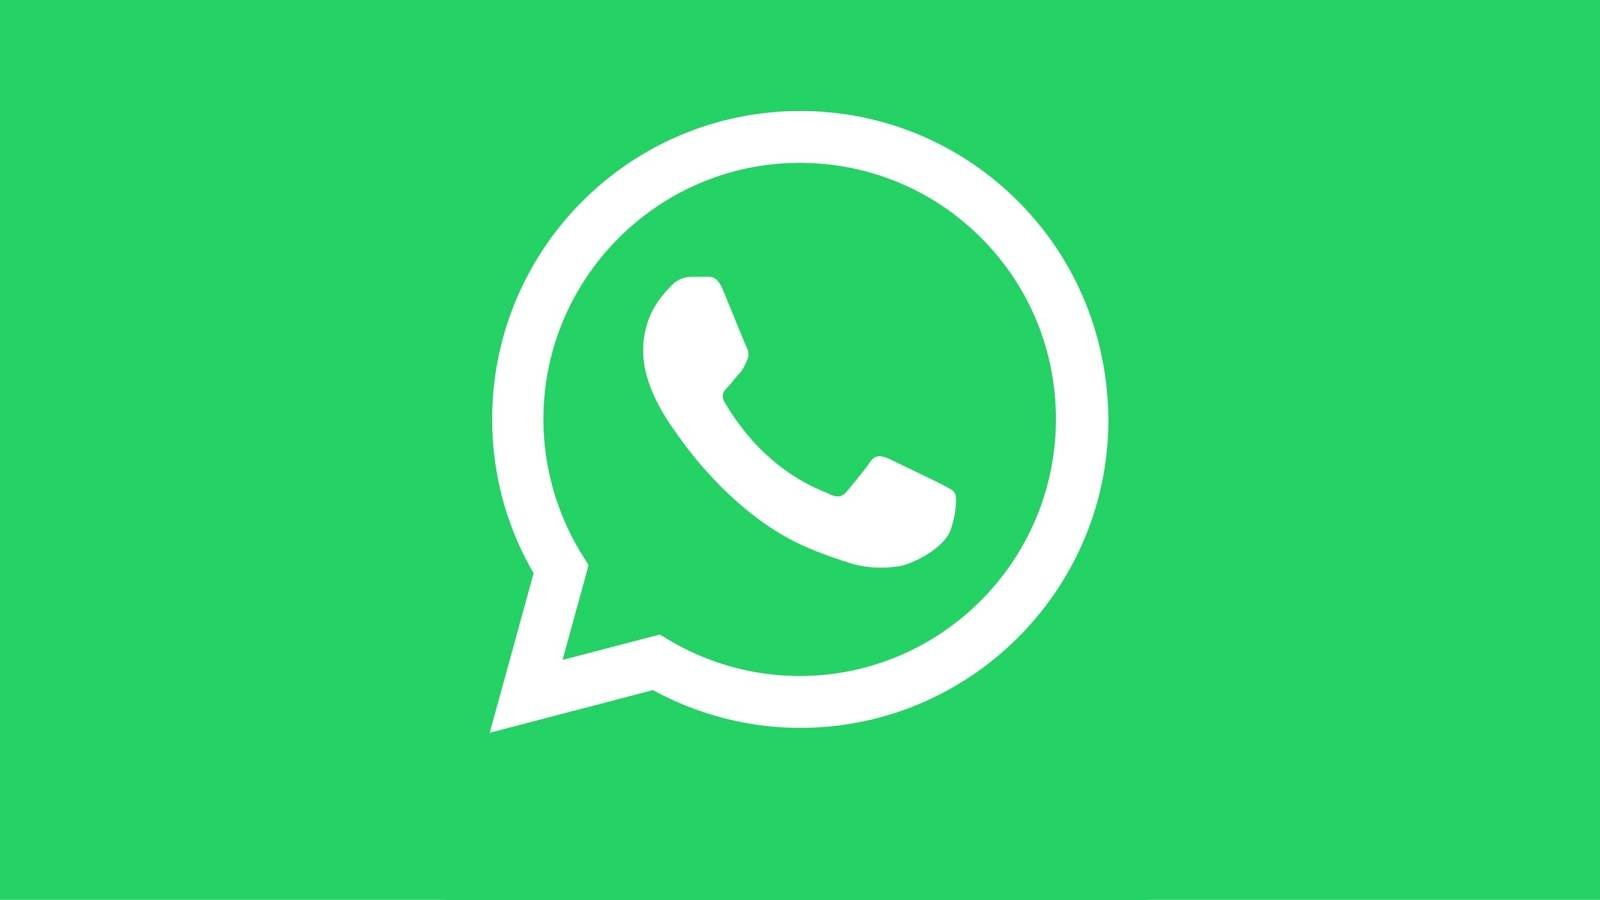 WhatsApp transformations